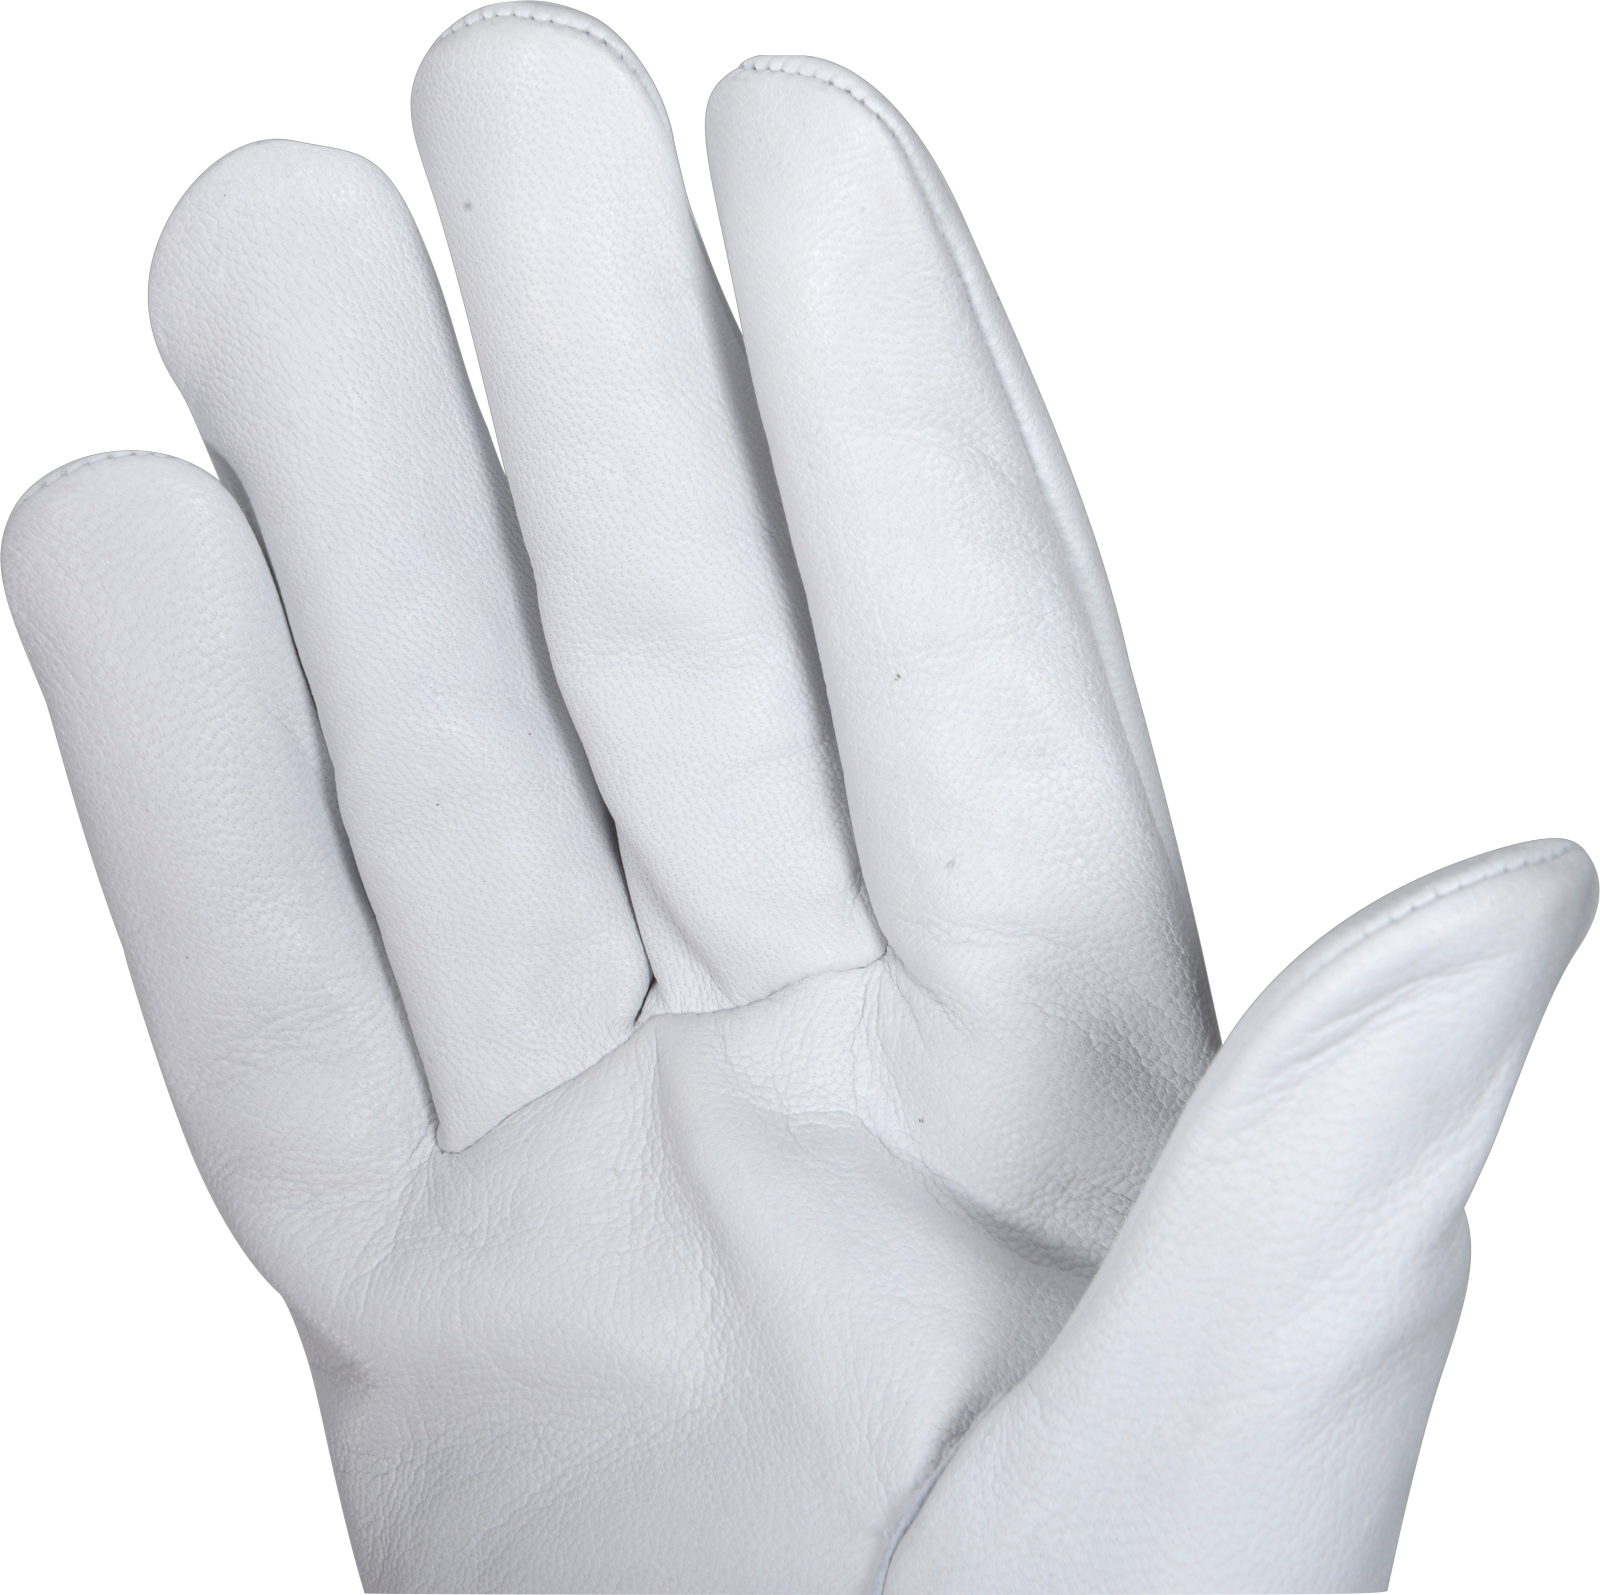 Handschuhe OX-ON Worker Comfort 2303 Gr. 8